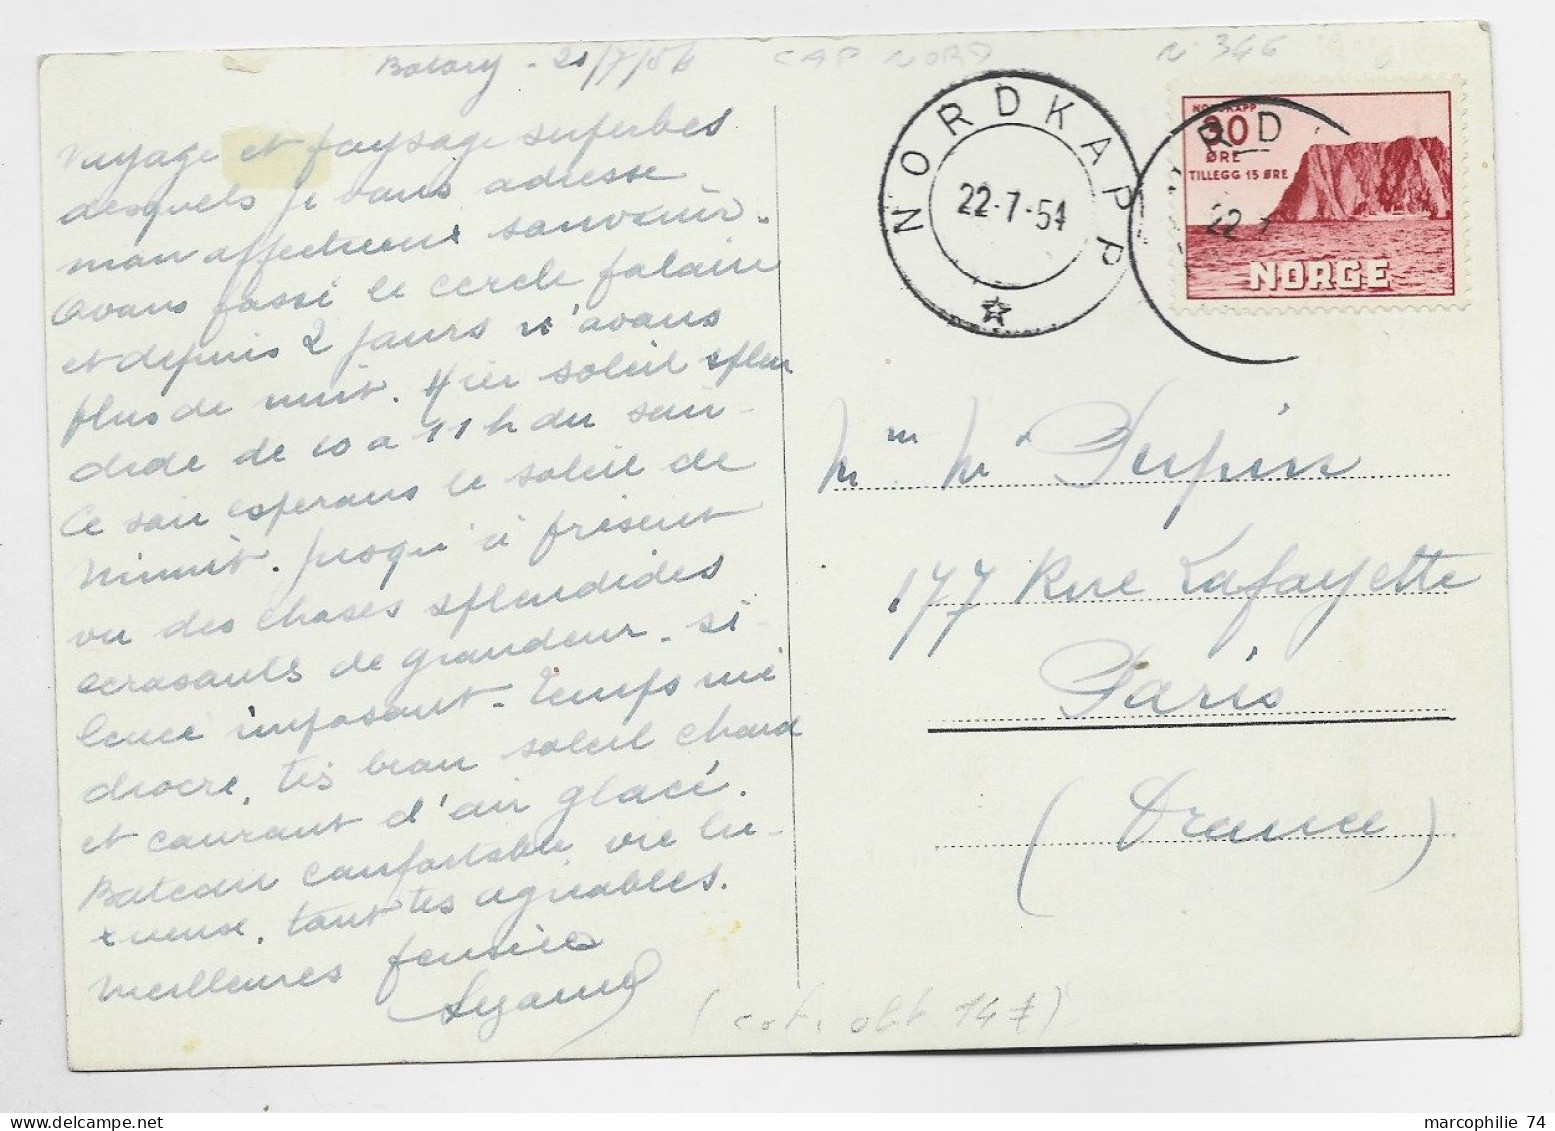 NORGE 30 ORE SOLO CARD CARTE NORDKAPP 22.7.1954 TO FRANCE - Brieven En Documenten